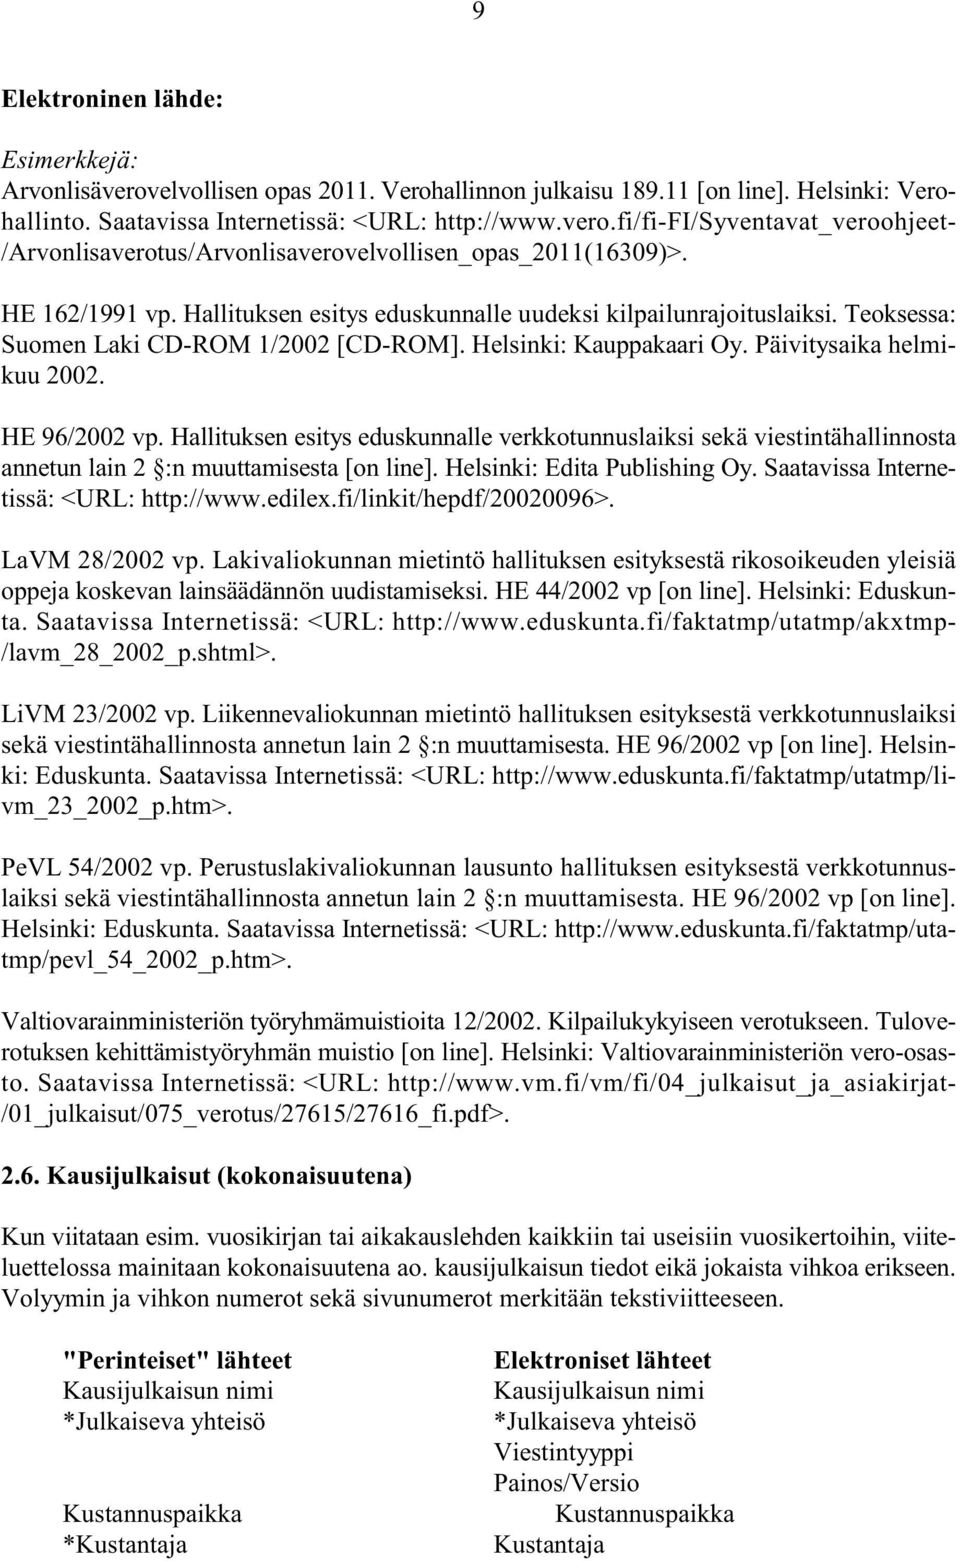 Hallituksen esitys eduskunnalle verkkotunnuslaiksi sekä viestintähallinnosta annetun lain 2 :n muuttamisesta [on line]. Helsinki: Edita Publishing Oy. Saatavissa Internetissä: <URL: http://www.edilex.